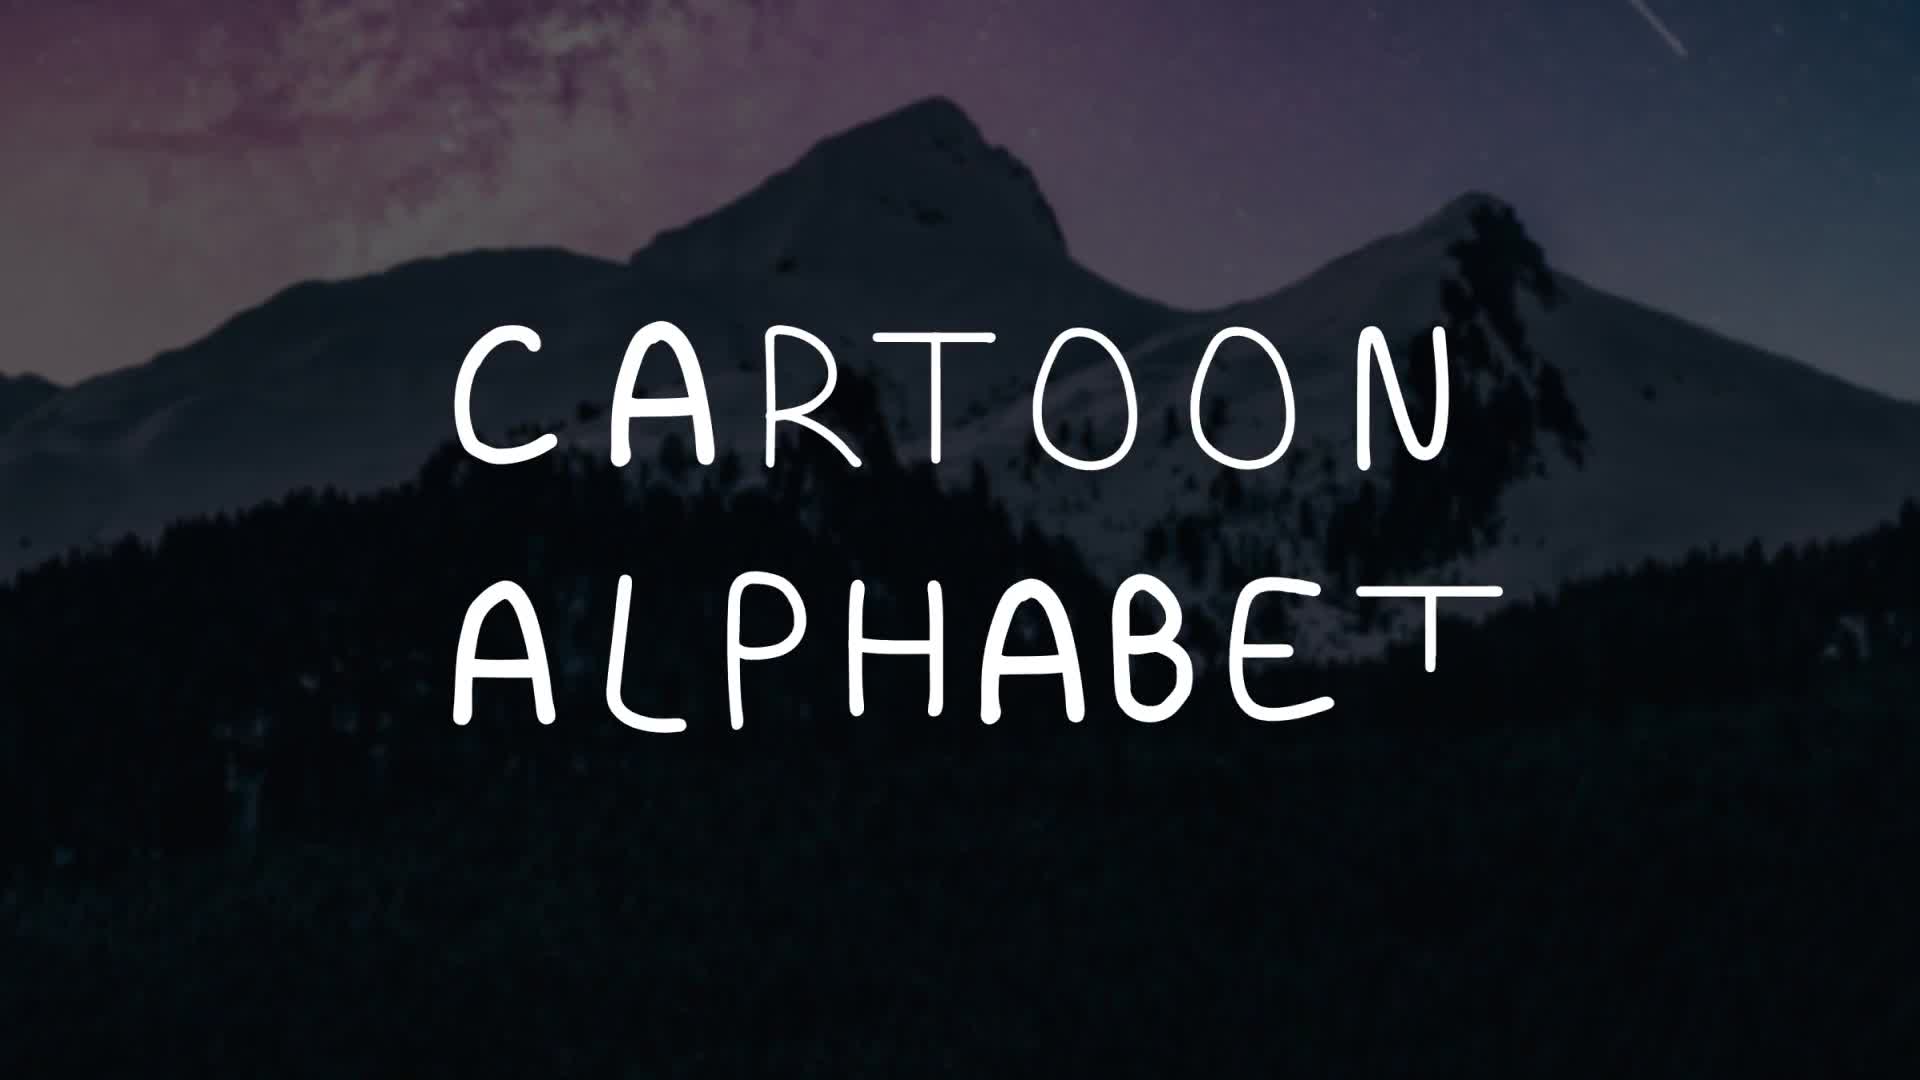 Cartoon Alphabet | Premiere Pro MOGRT Videohive 33481839 Premiere Pro Image 1